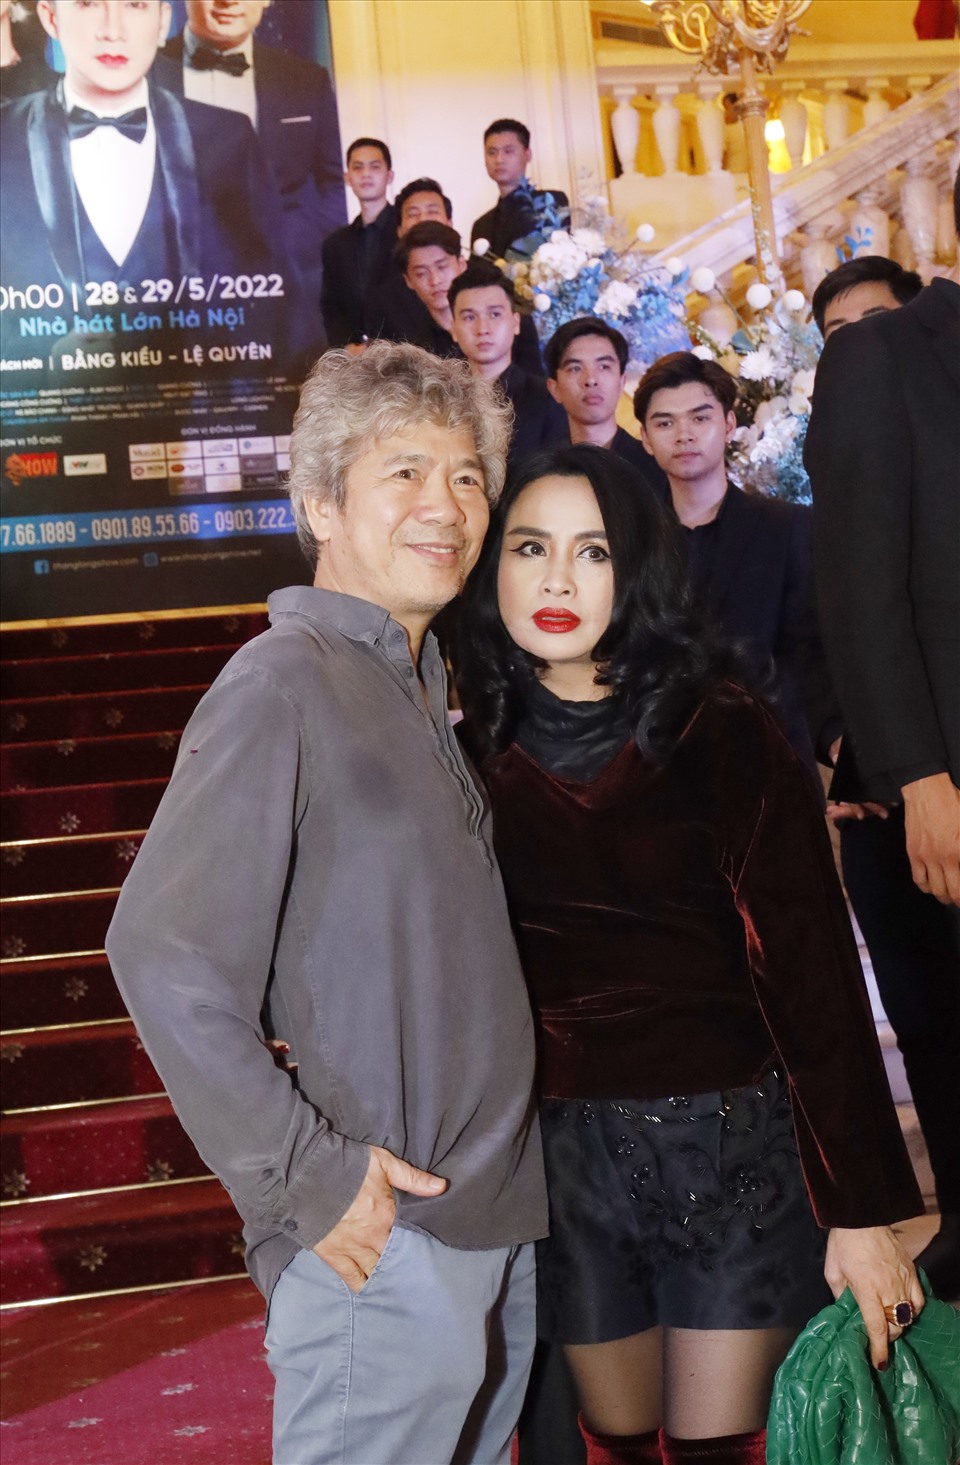 Tại thảm đỏ chương trình, Diva Thanh Lam và bạn trai bác sĩ nhận được sự quan tâm của khán giả, ống kính truyền thông khi xuất hiện tình tứ, đến chúc mừng đàn em Quang Hà.